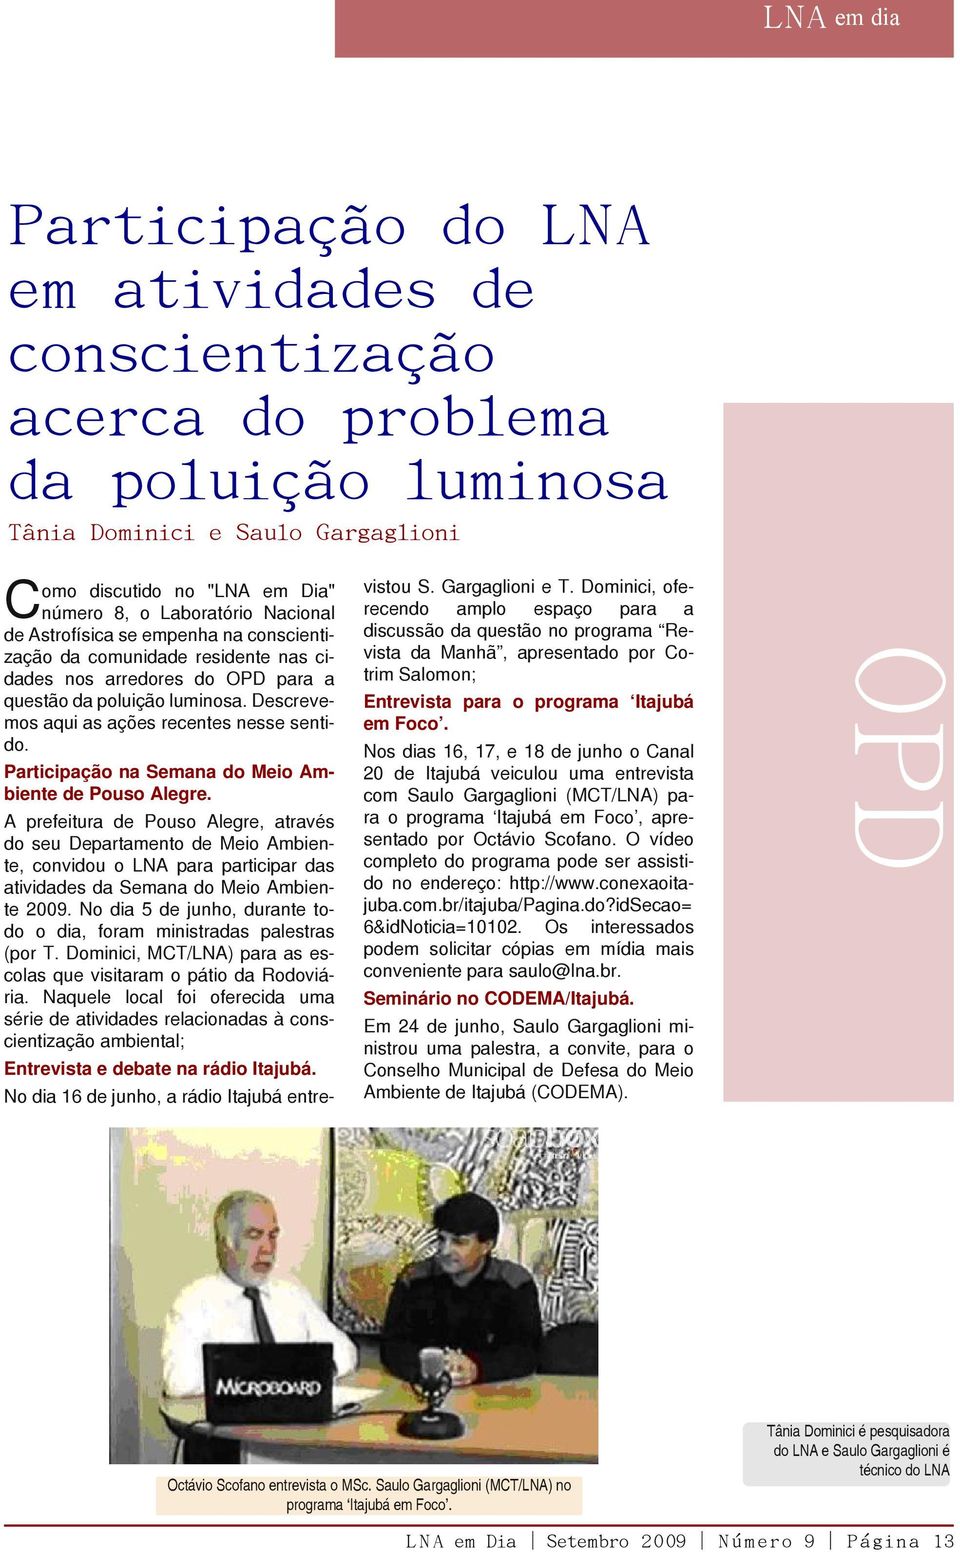 A prefeitura de Pouso Alegre, através do seu Departamento de Meio Ambiente, convidou o LNA para participar das atividades da Semana do Meio Ambiente 2009.